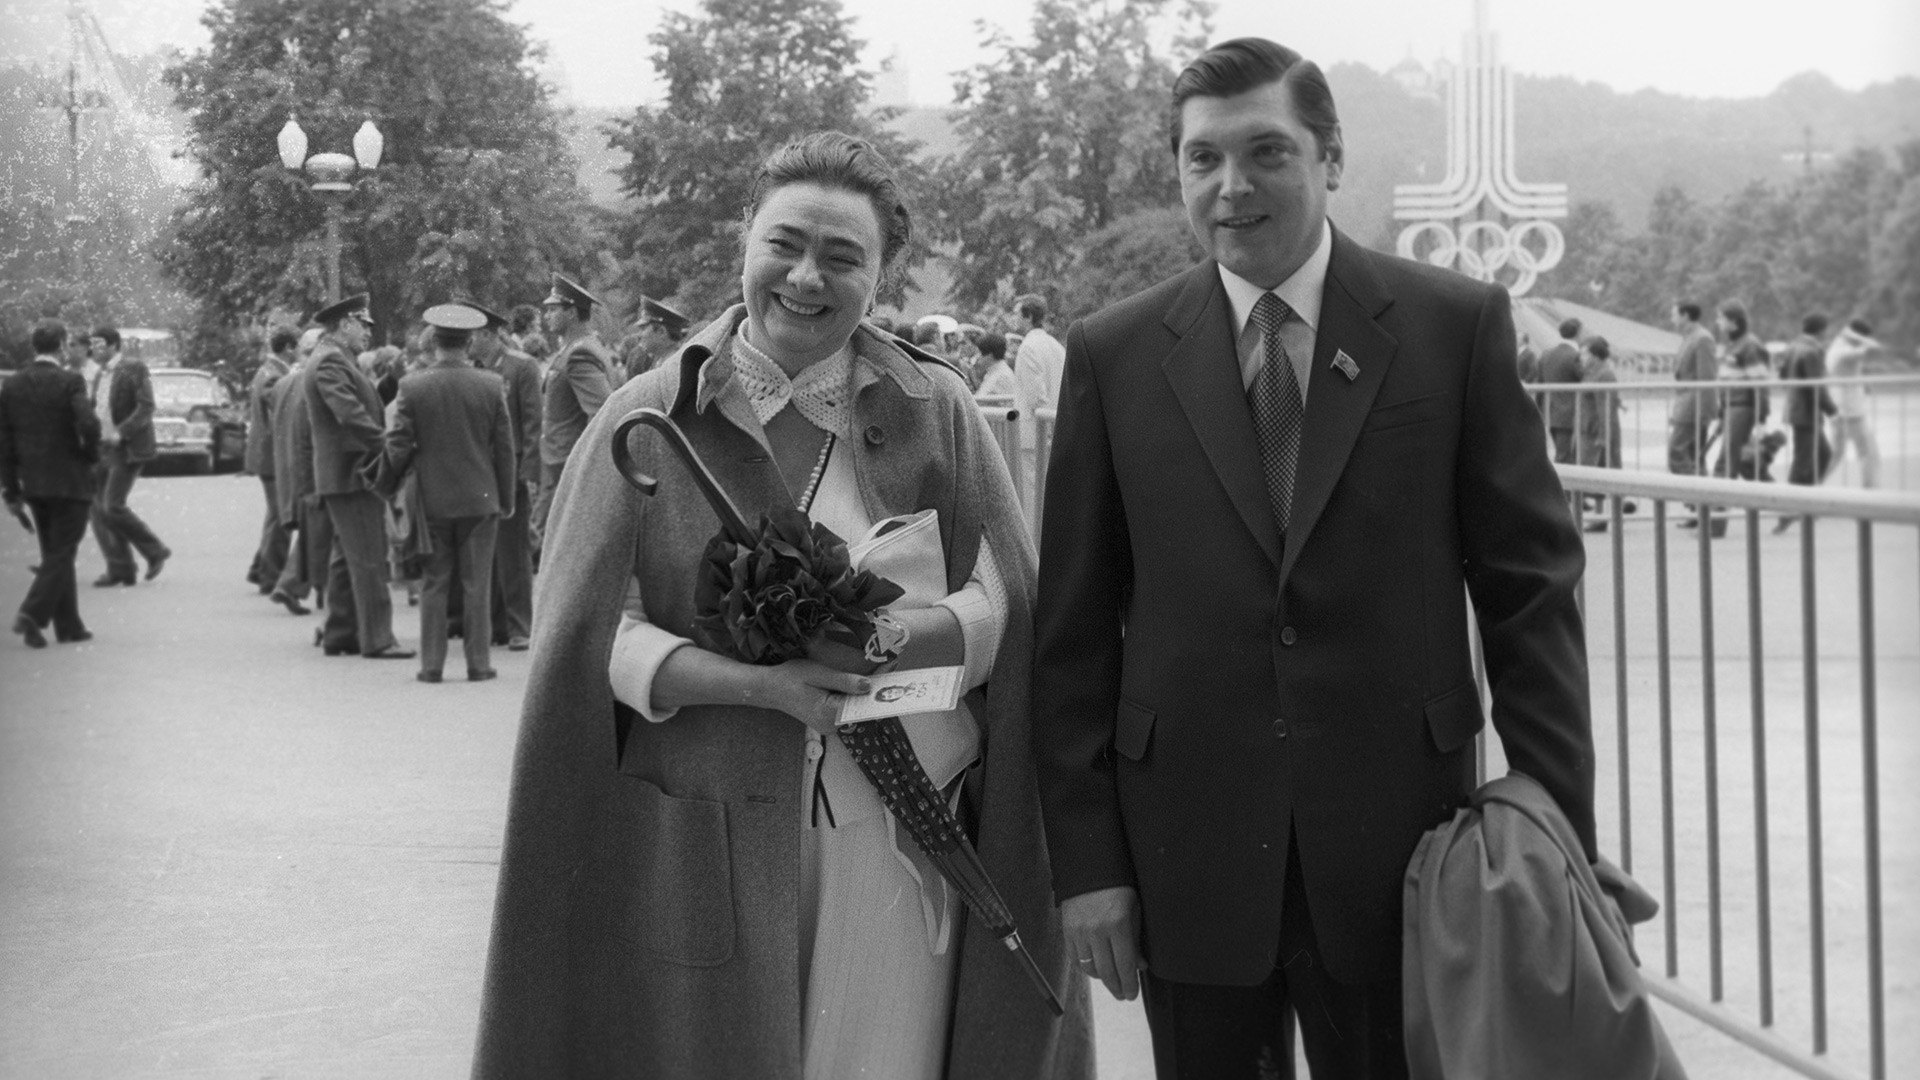 Галина Брежнев, дъщеря на генералния секретар на ЦК на КПСС Л. И. Брежнев, и Юрий Чурбанов